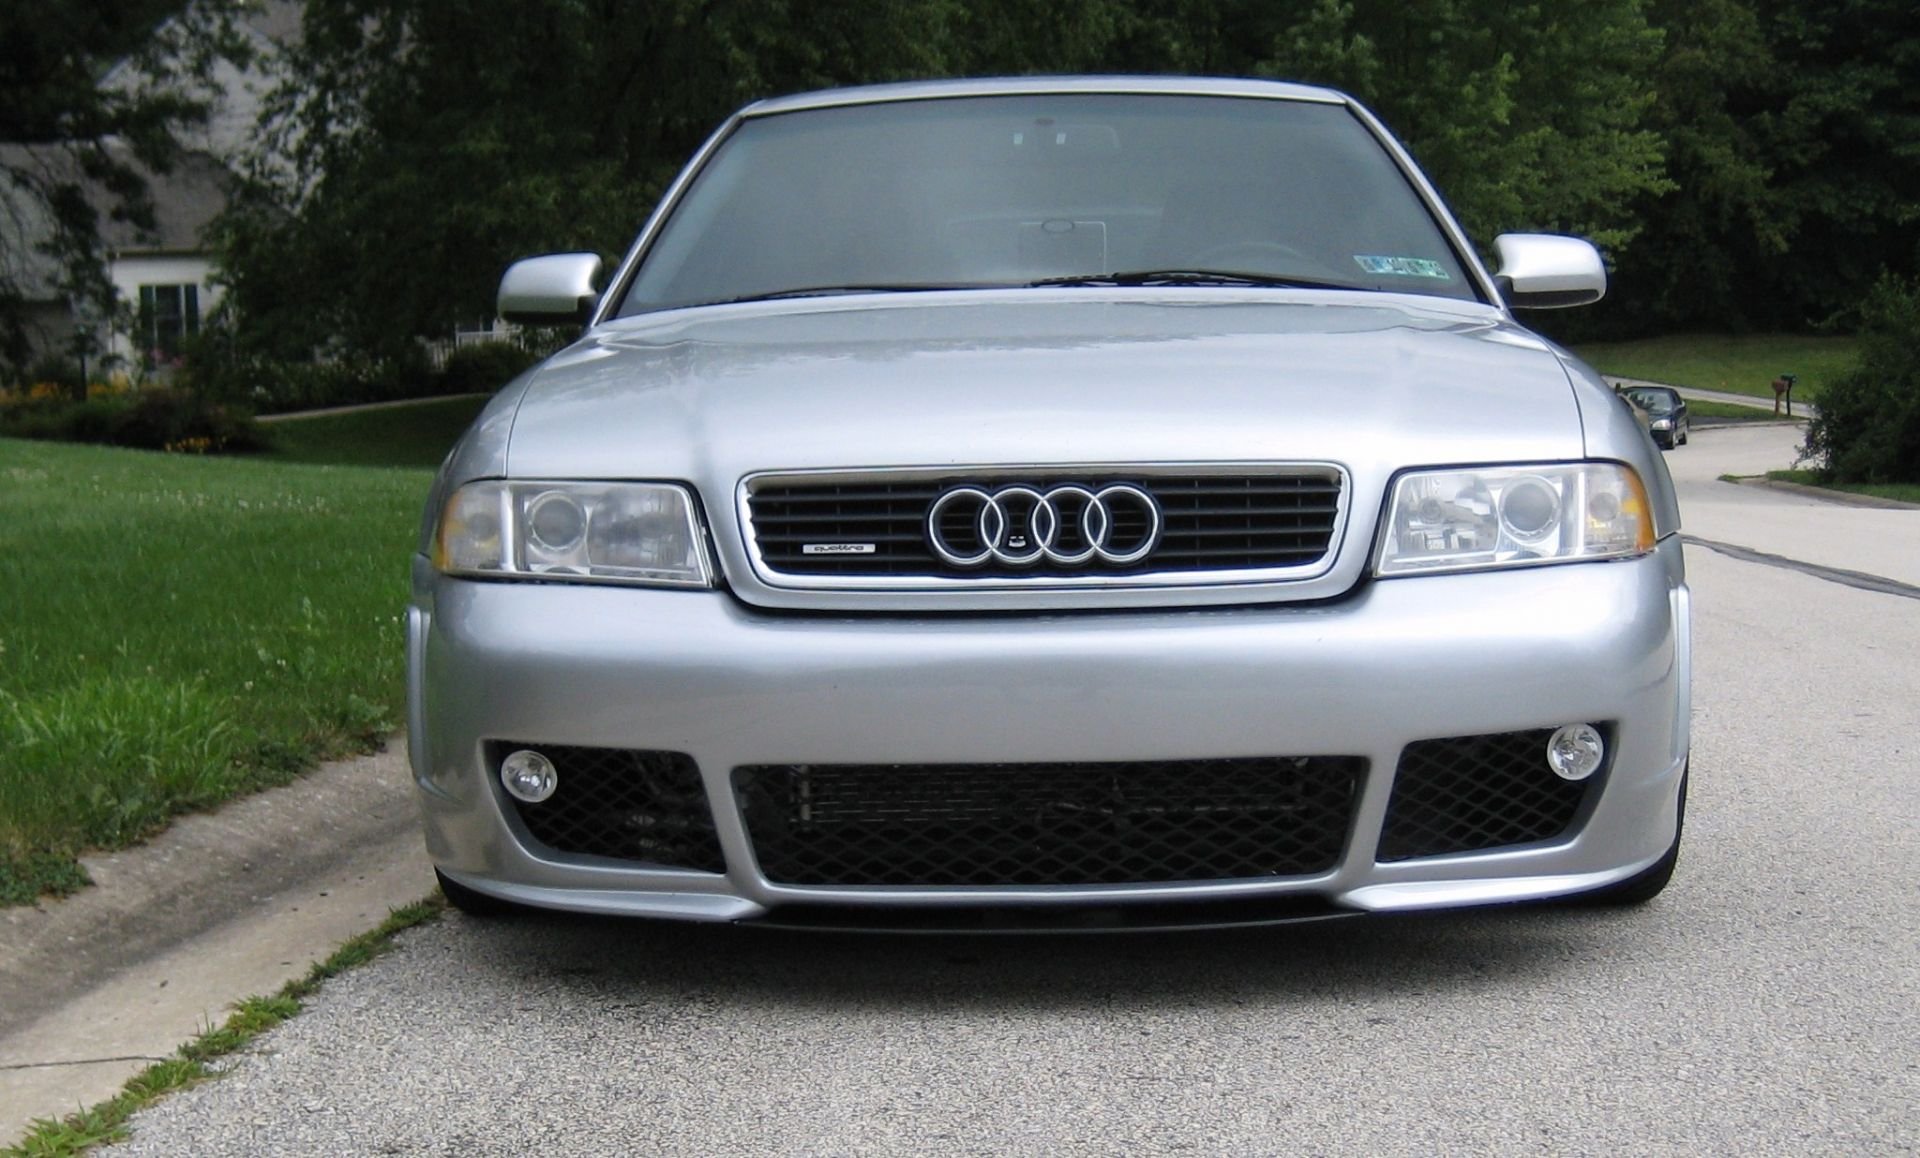 Купить ауди а 4 б 5. Audi s4 b5 Silver. Ауди а4 б5. Audi a4 b5 [1995-2001. Бампер Ауди s4 b5.